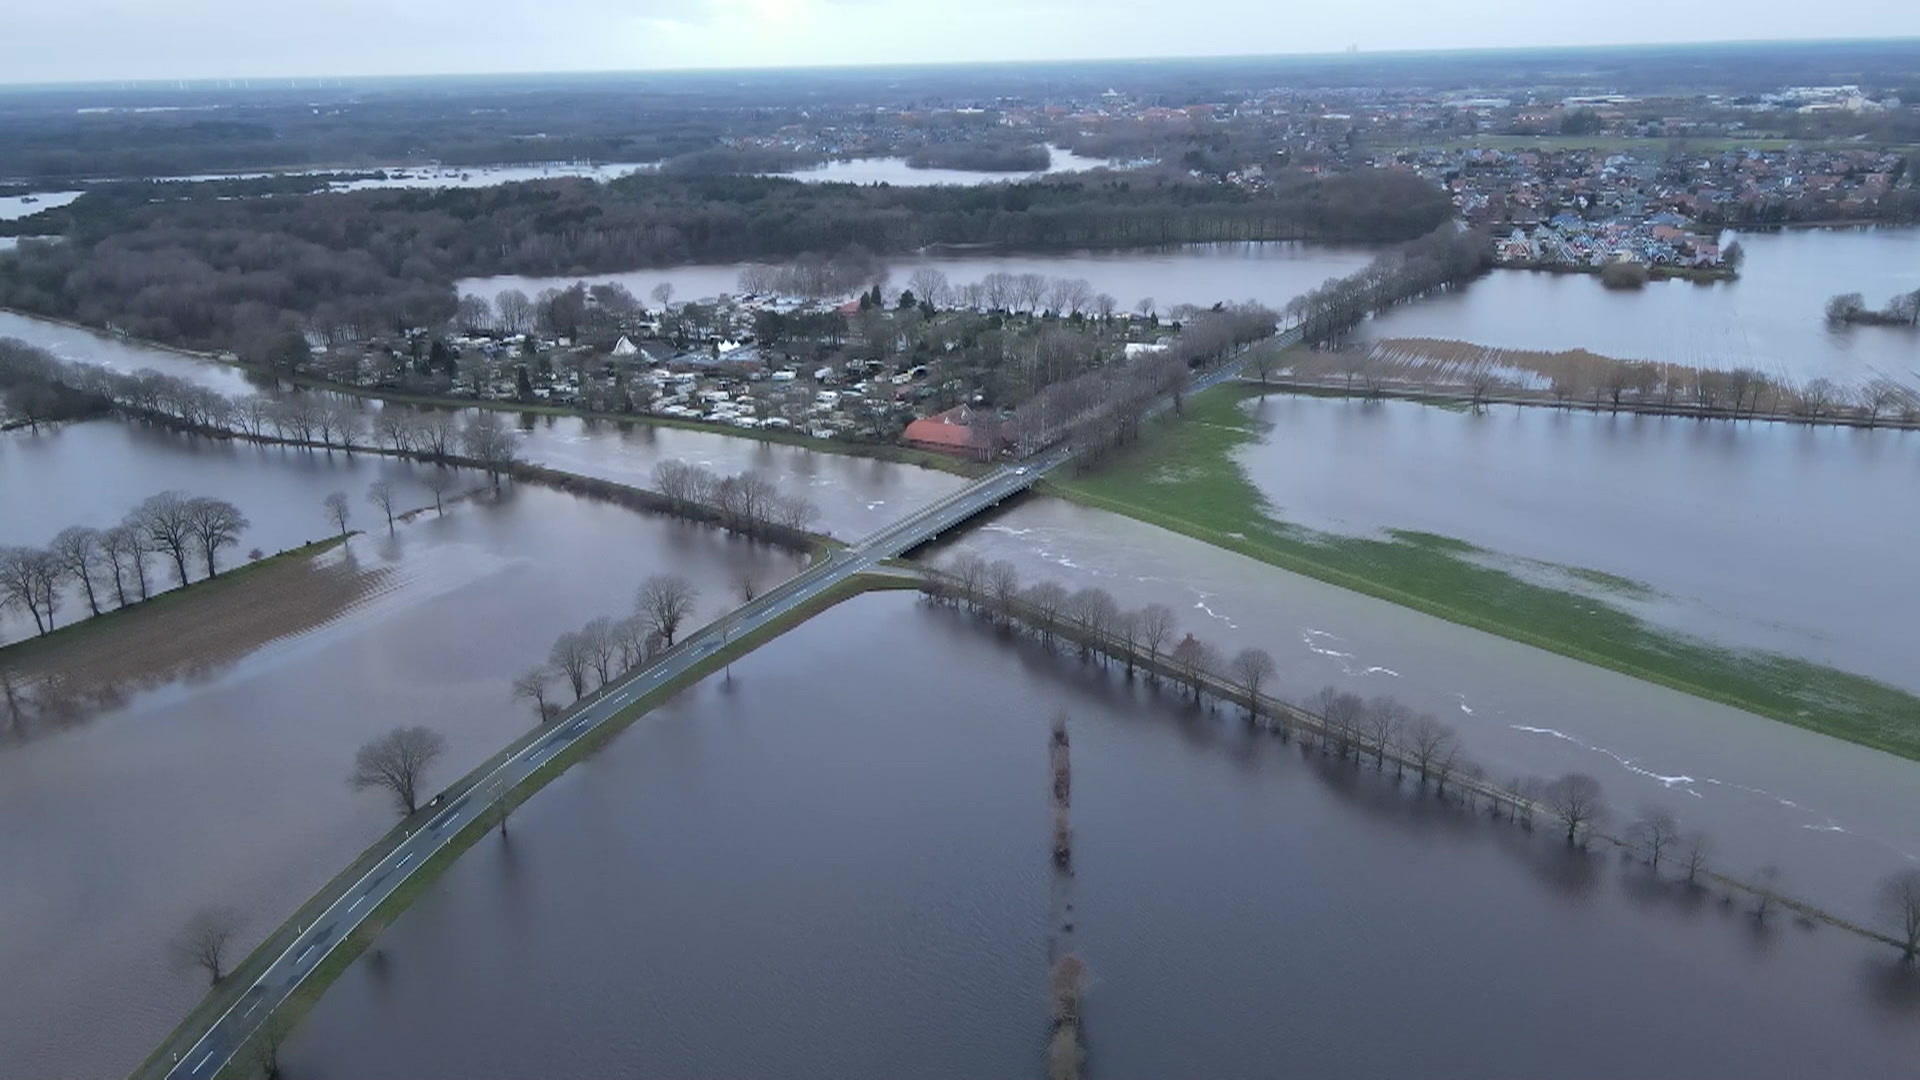 Powodzie zagrażają wielu domom w Niemczech